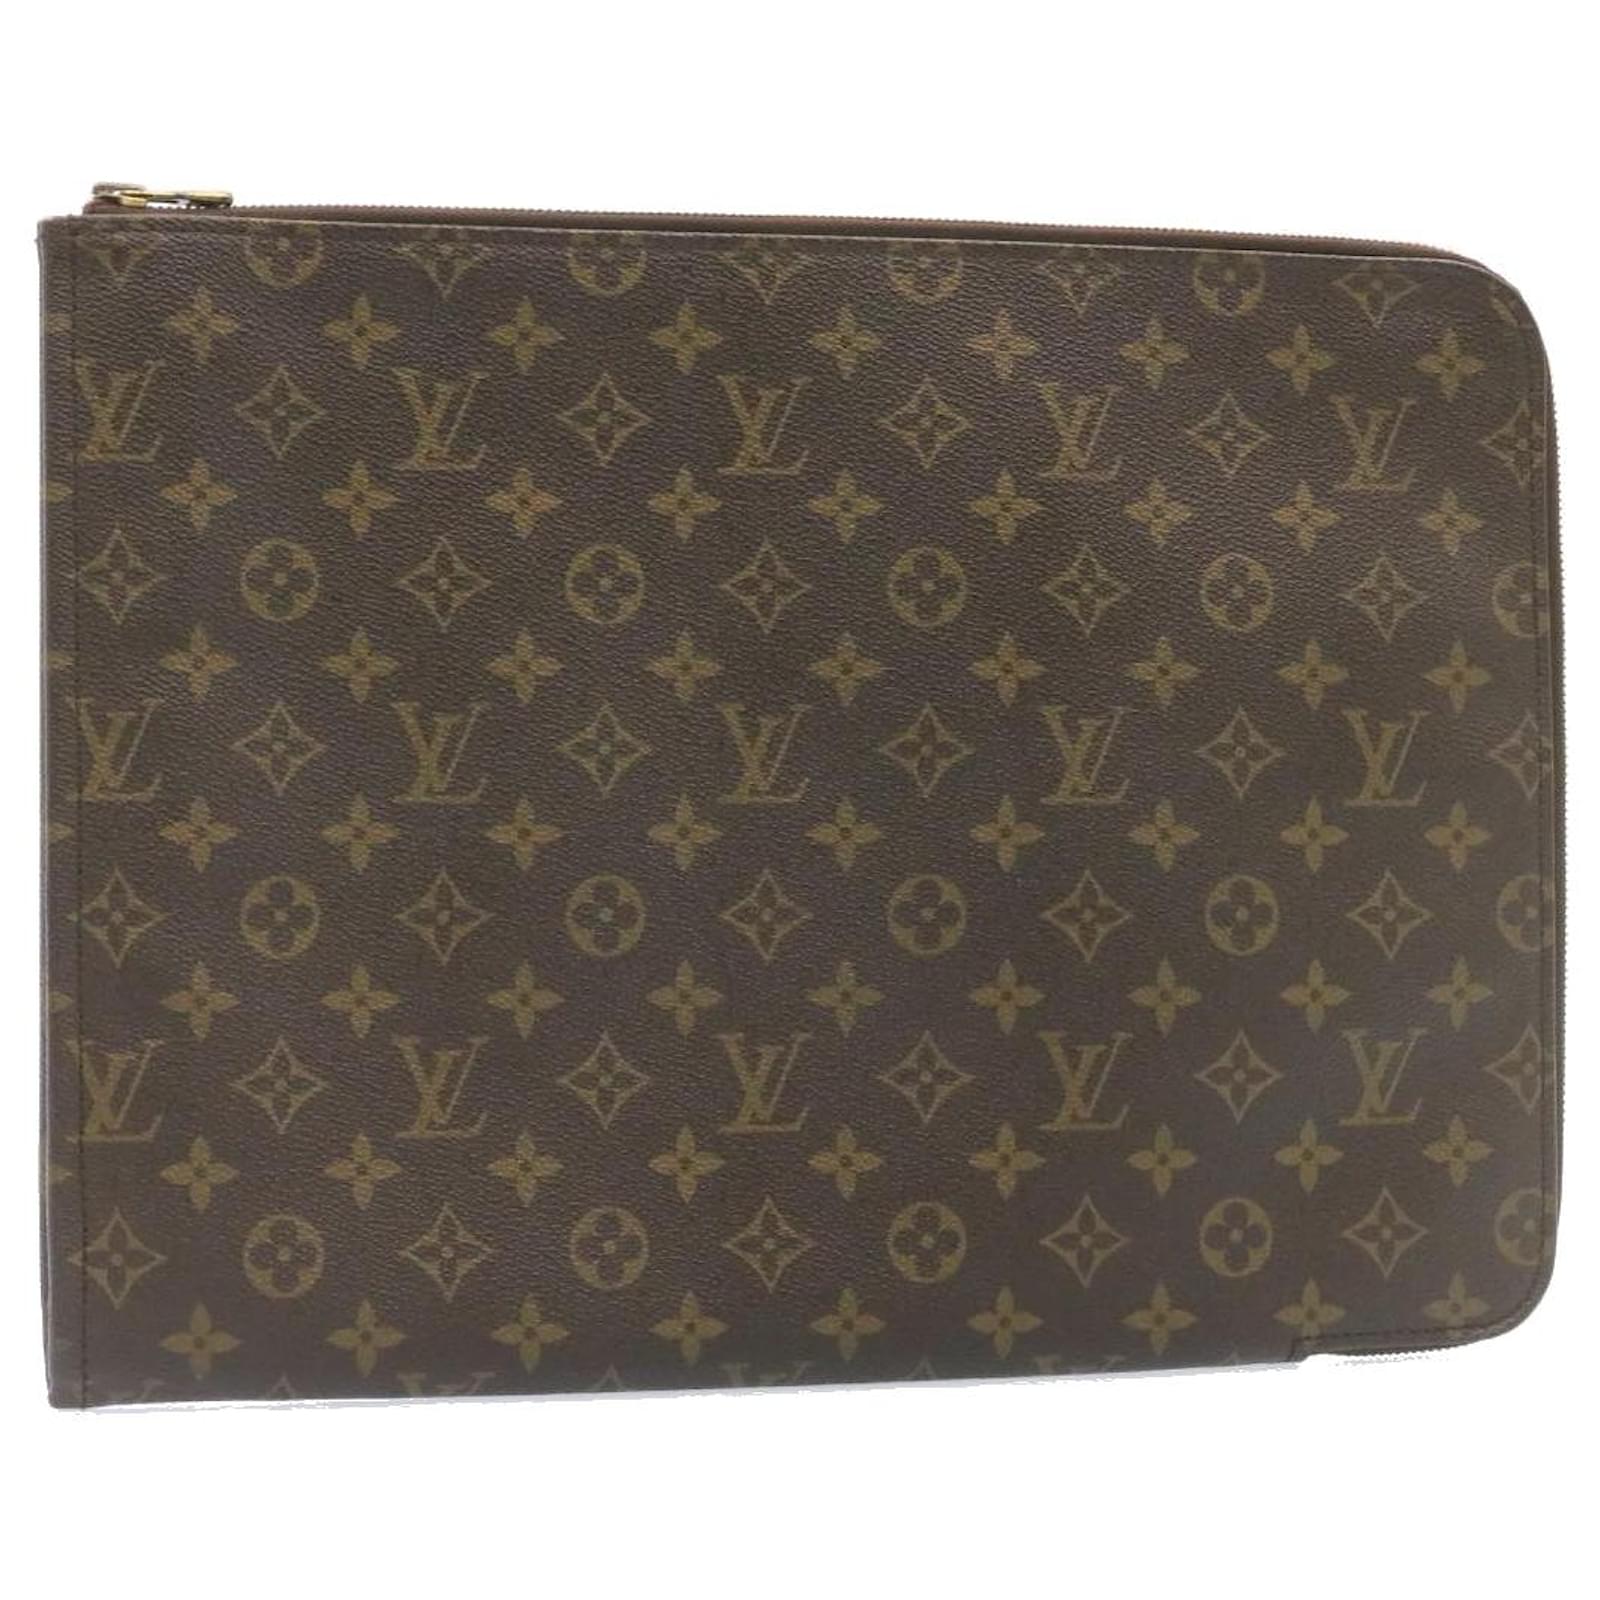 LV vintage poche document biz bag/laptop case, Luxury, Bags